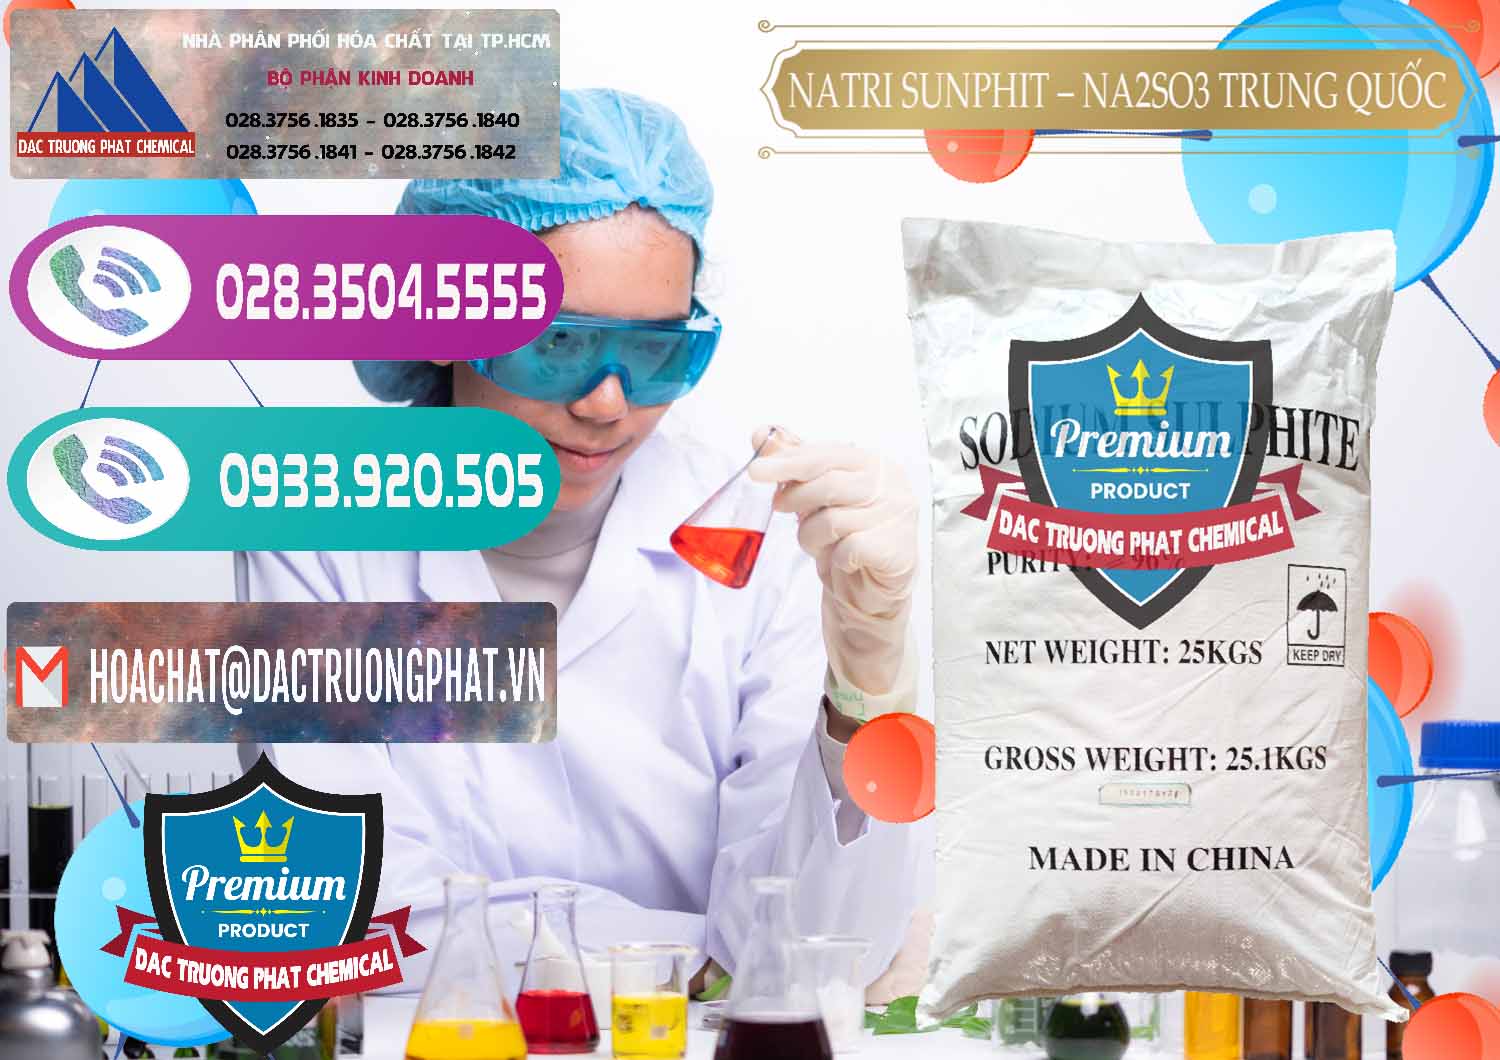 Cty bán _ cung cấp Natri Sunphit - NA2SO3 Trung Quốc China - 0106 - Cty kinh doanh _ cung cấp hóa chất tại TP.HCM - hoachatxulynuoc.com